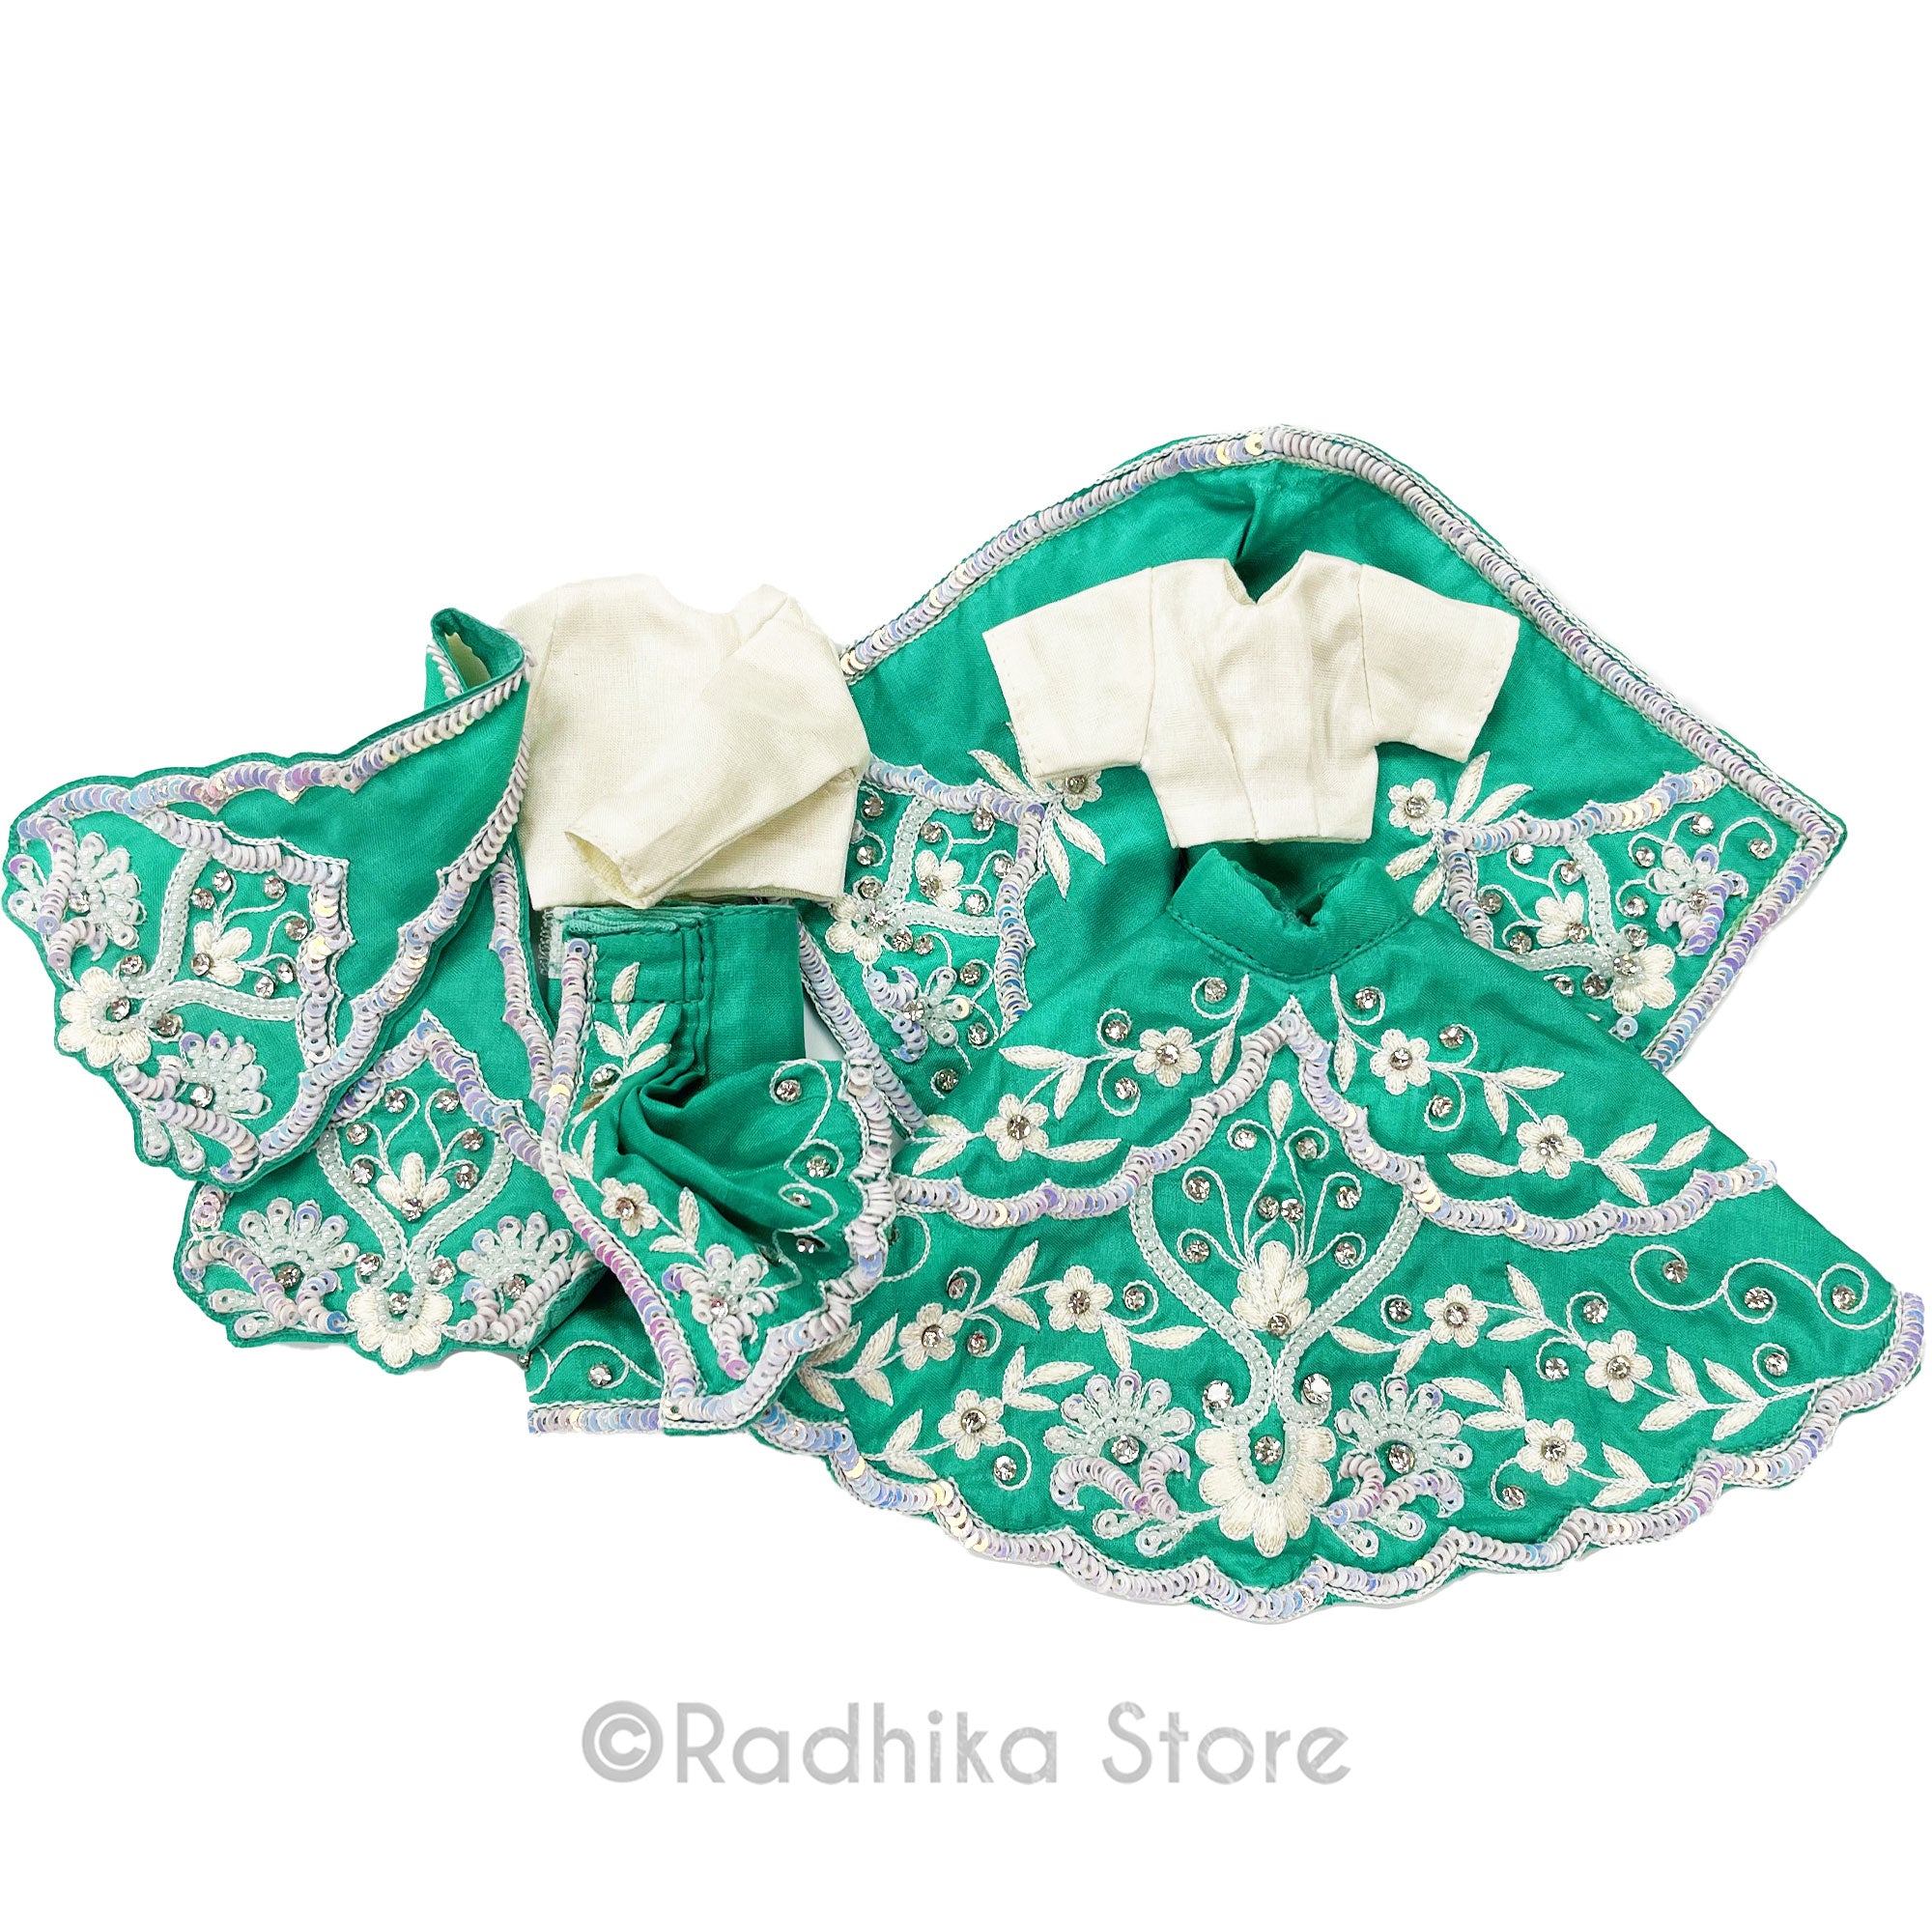 Creamy Dreamy All Season Green - Silk - Radha Krishna Deity Outfit